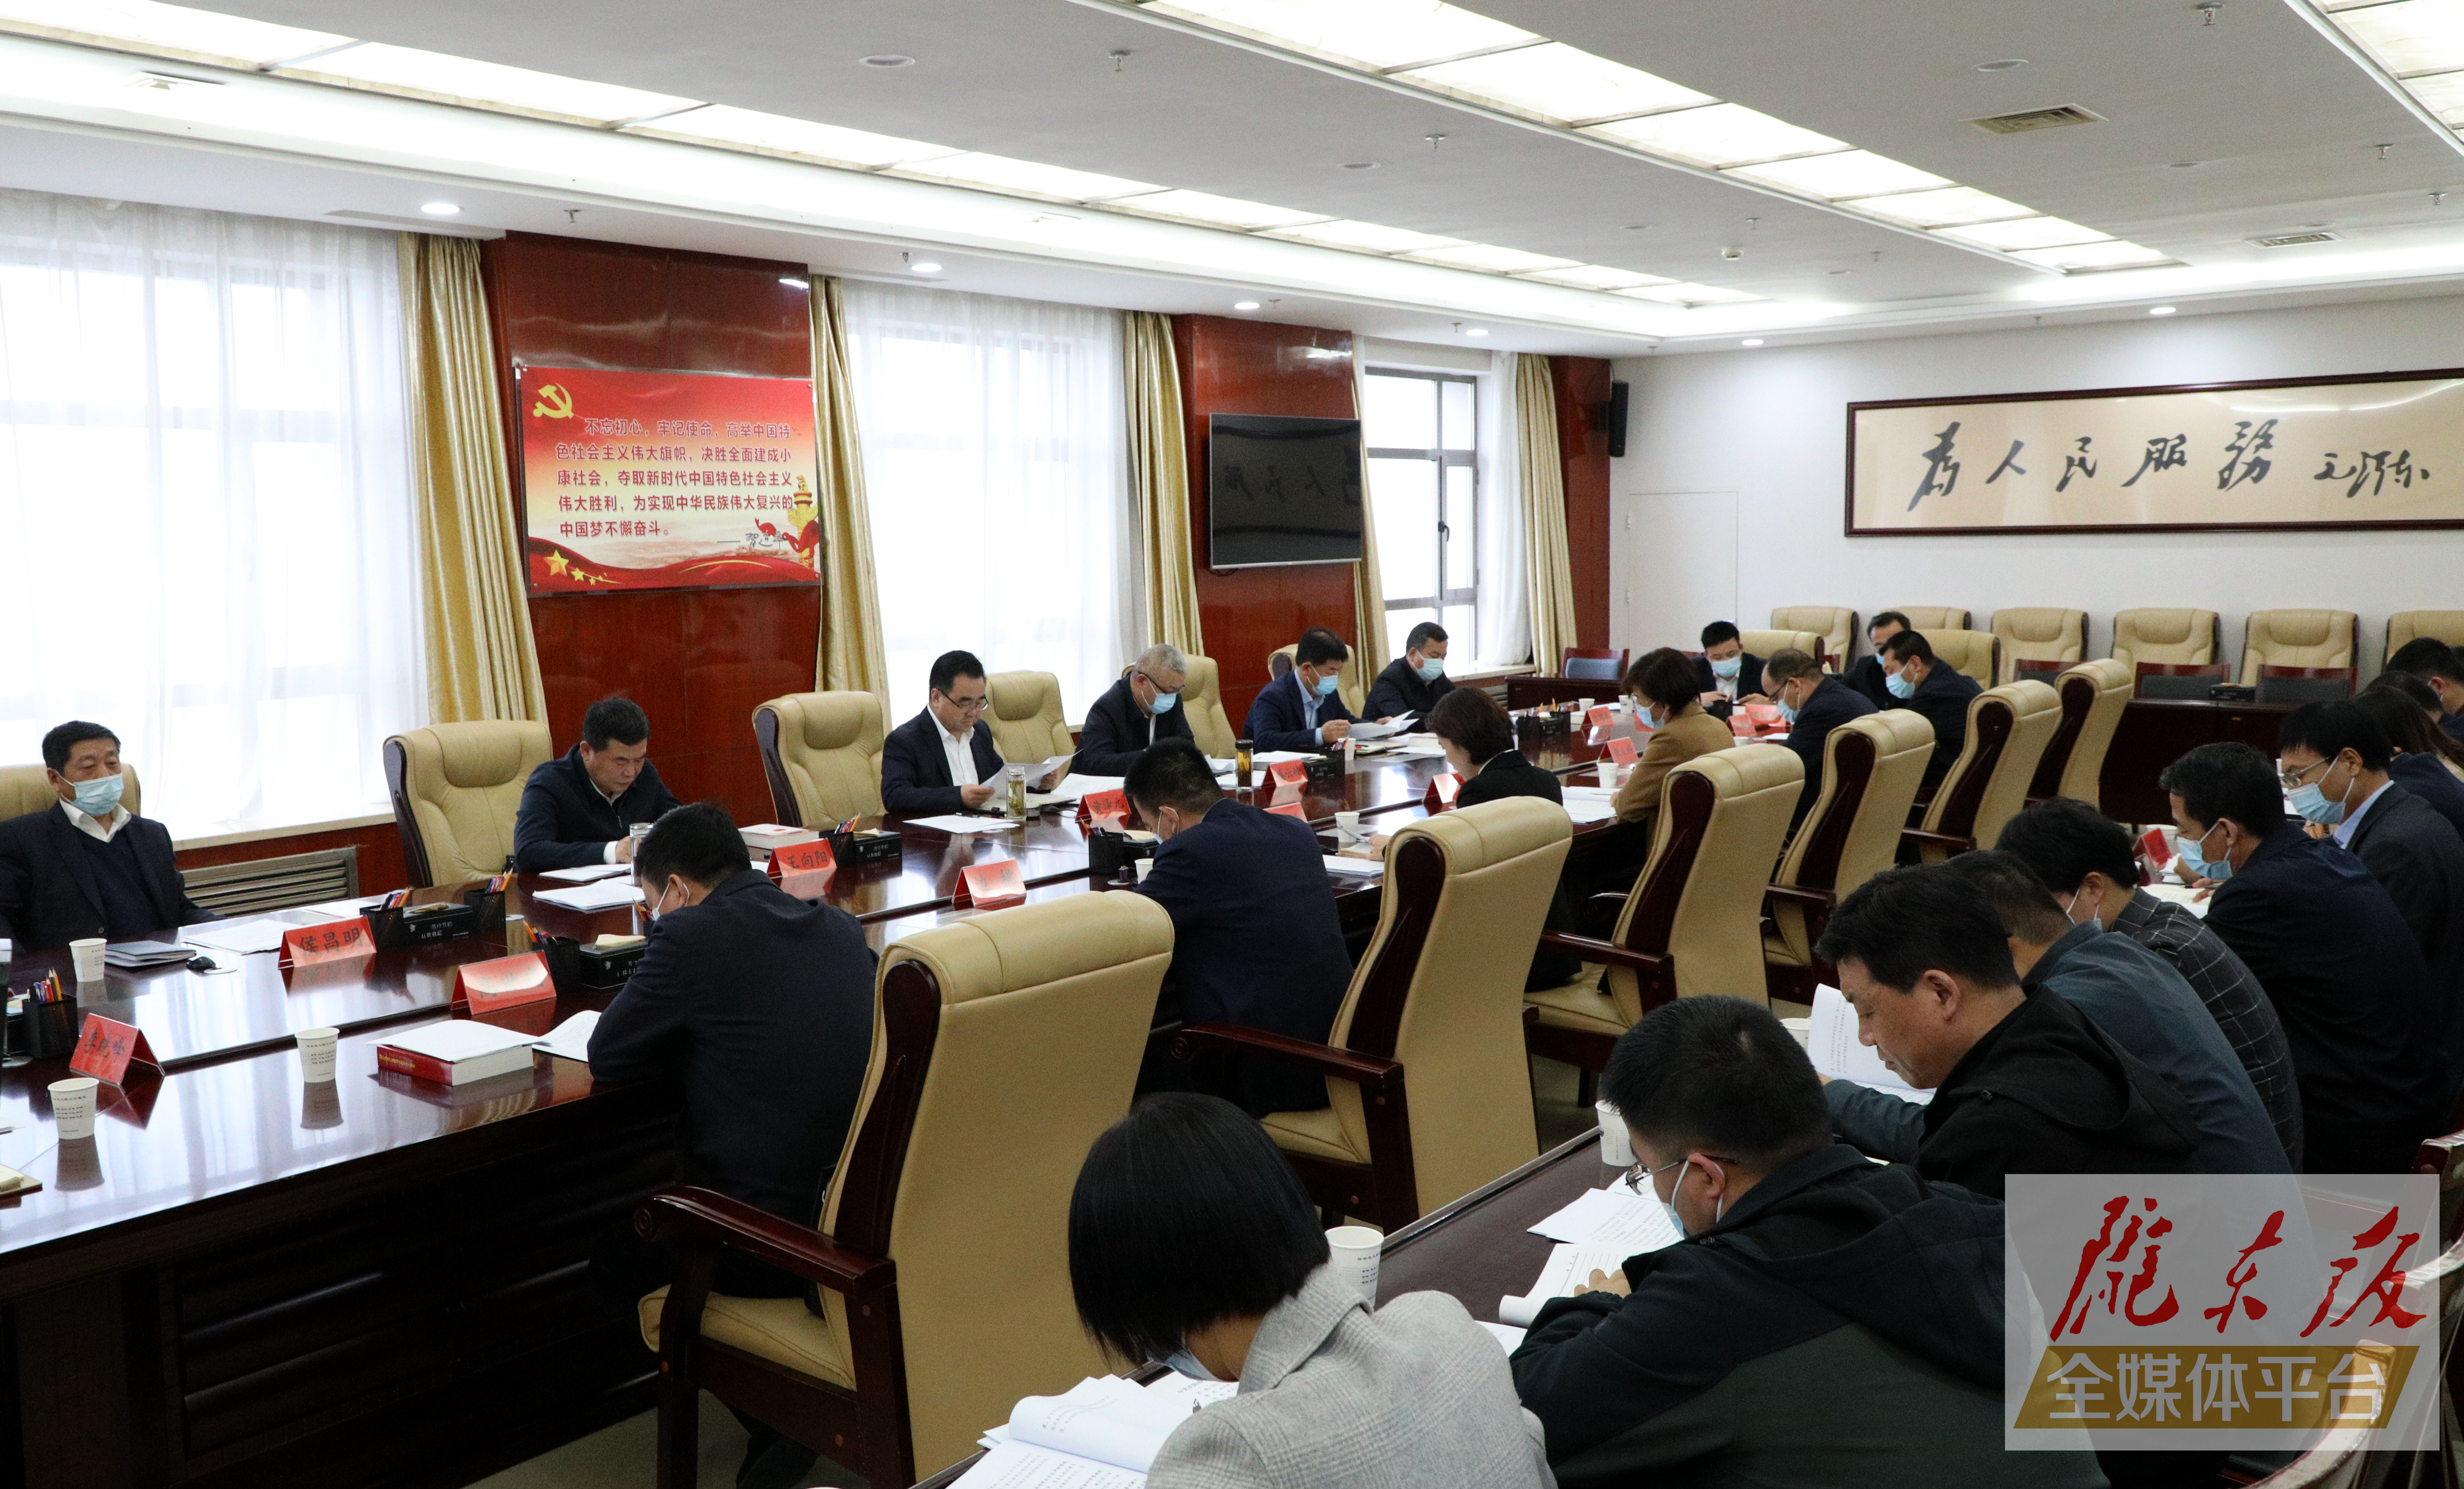 黄泽元在市委审计委员会第八次会议上强调 坚决扛起审计监督政治责任 在服务大局中展现更大作为